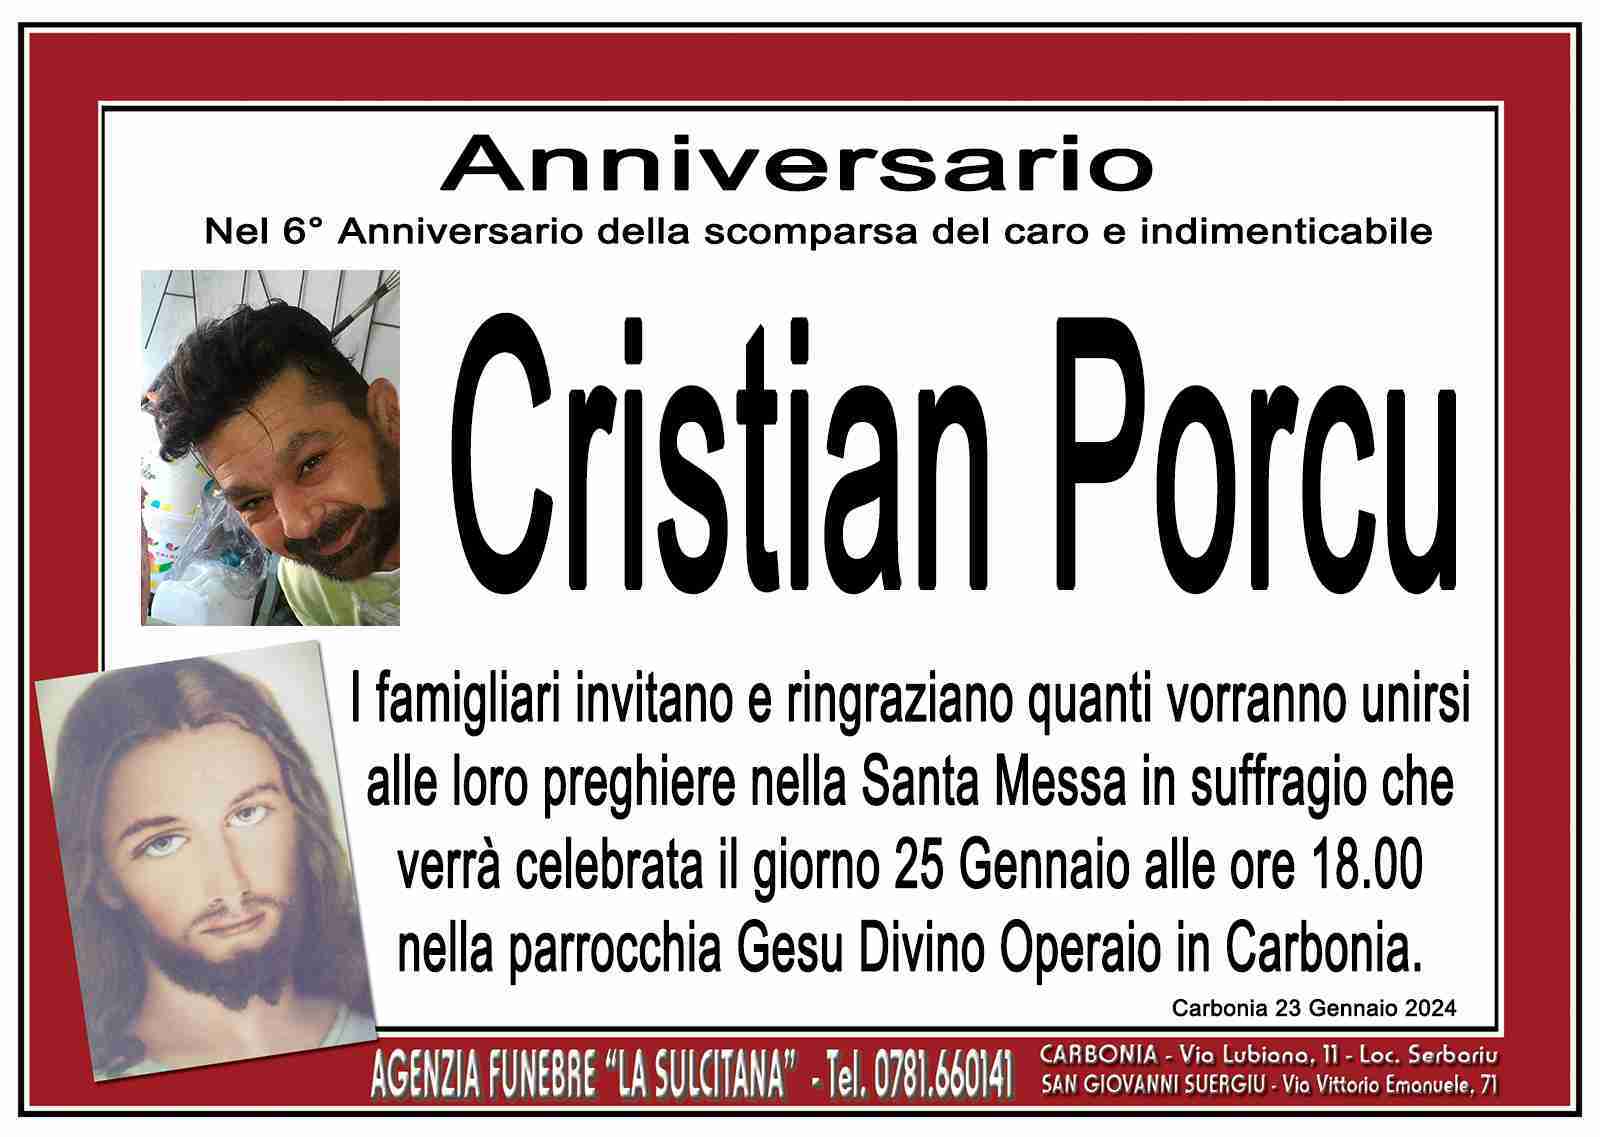 Cristian Porcu